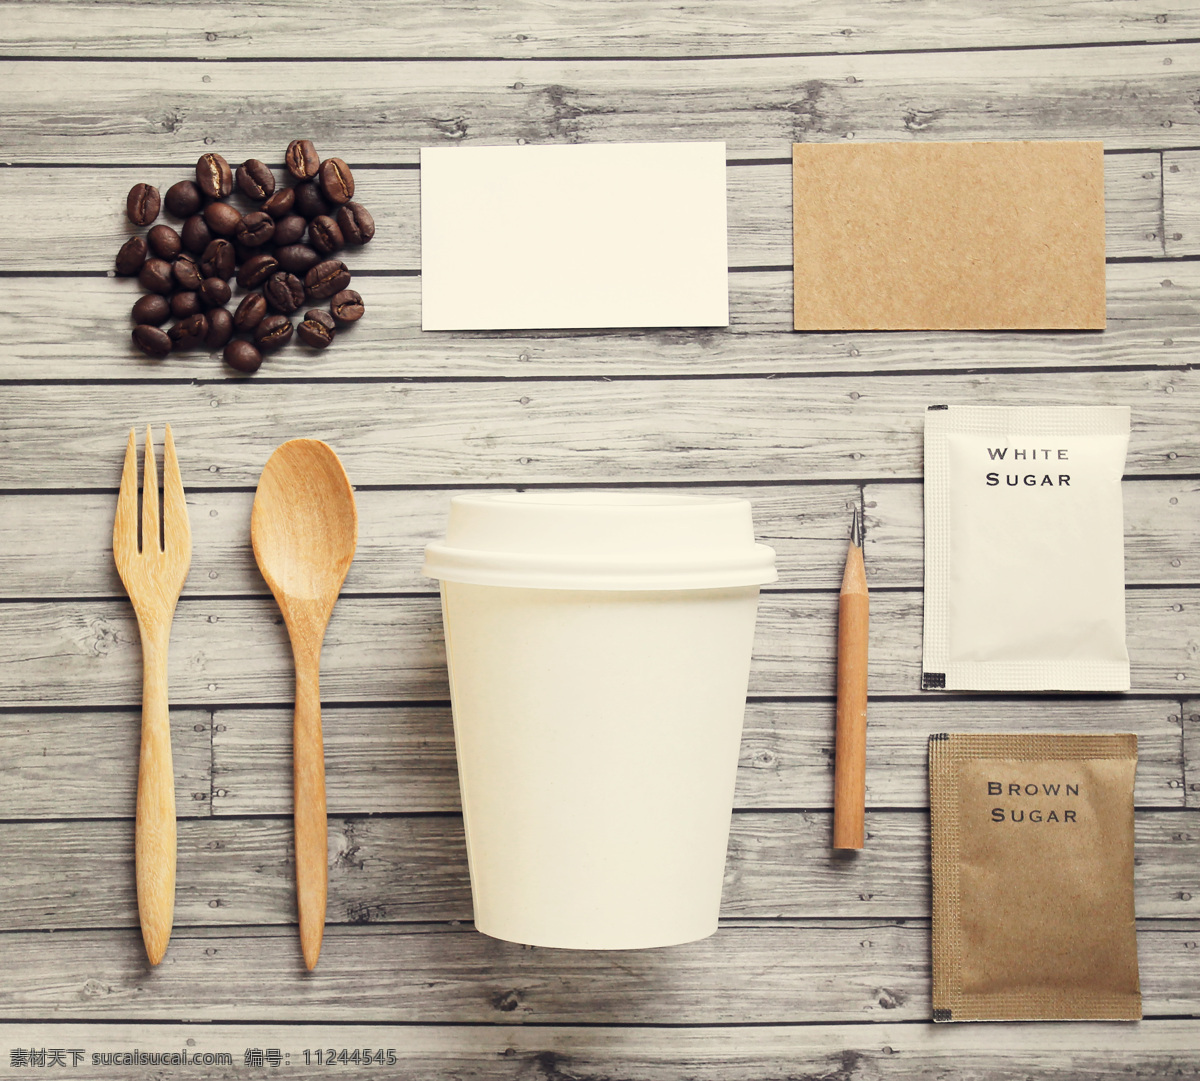 咖啡 vi 背景 咖啡vi背景 咖啡豆 木勺 吊牌 吊卡 名片 手提袋 纸袋 咖啡杯子 vis 视觉 识别 系统 食材原料 餐饮美食